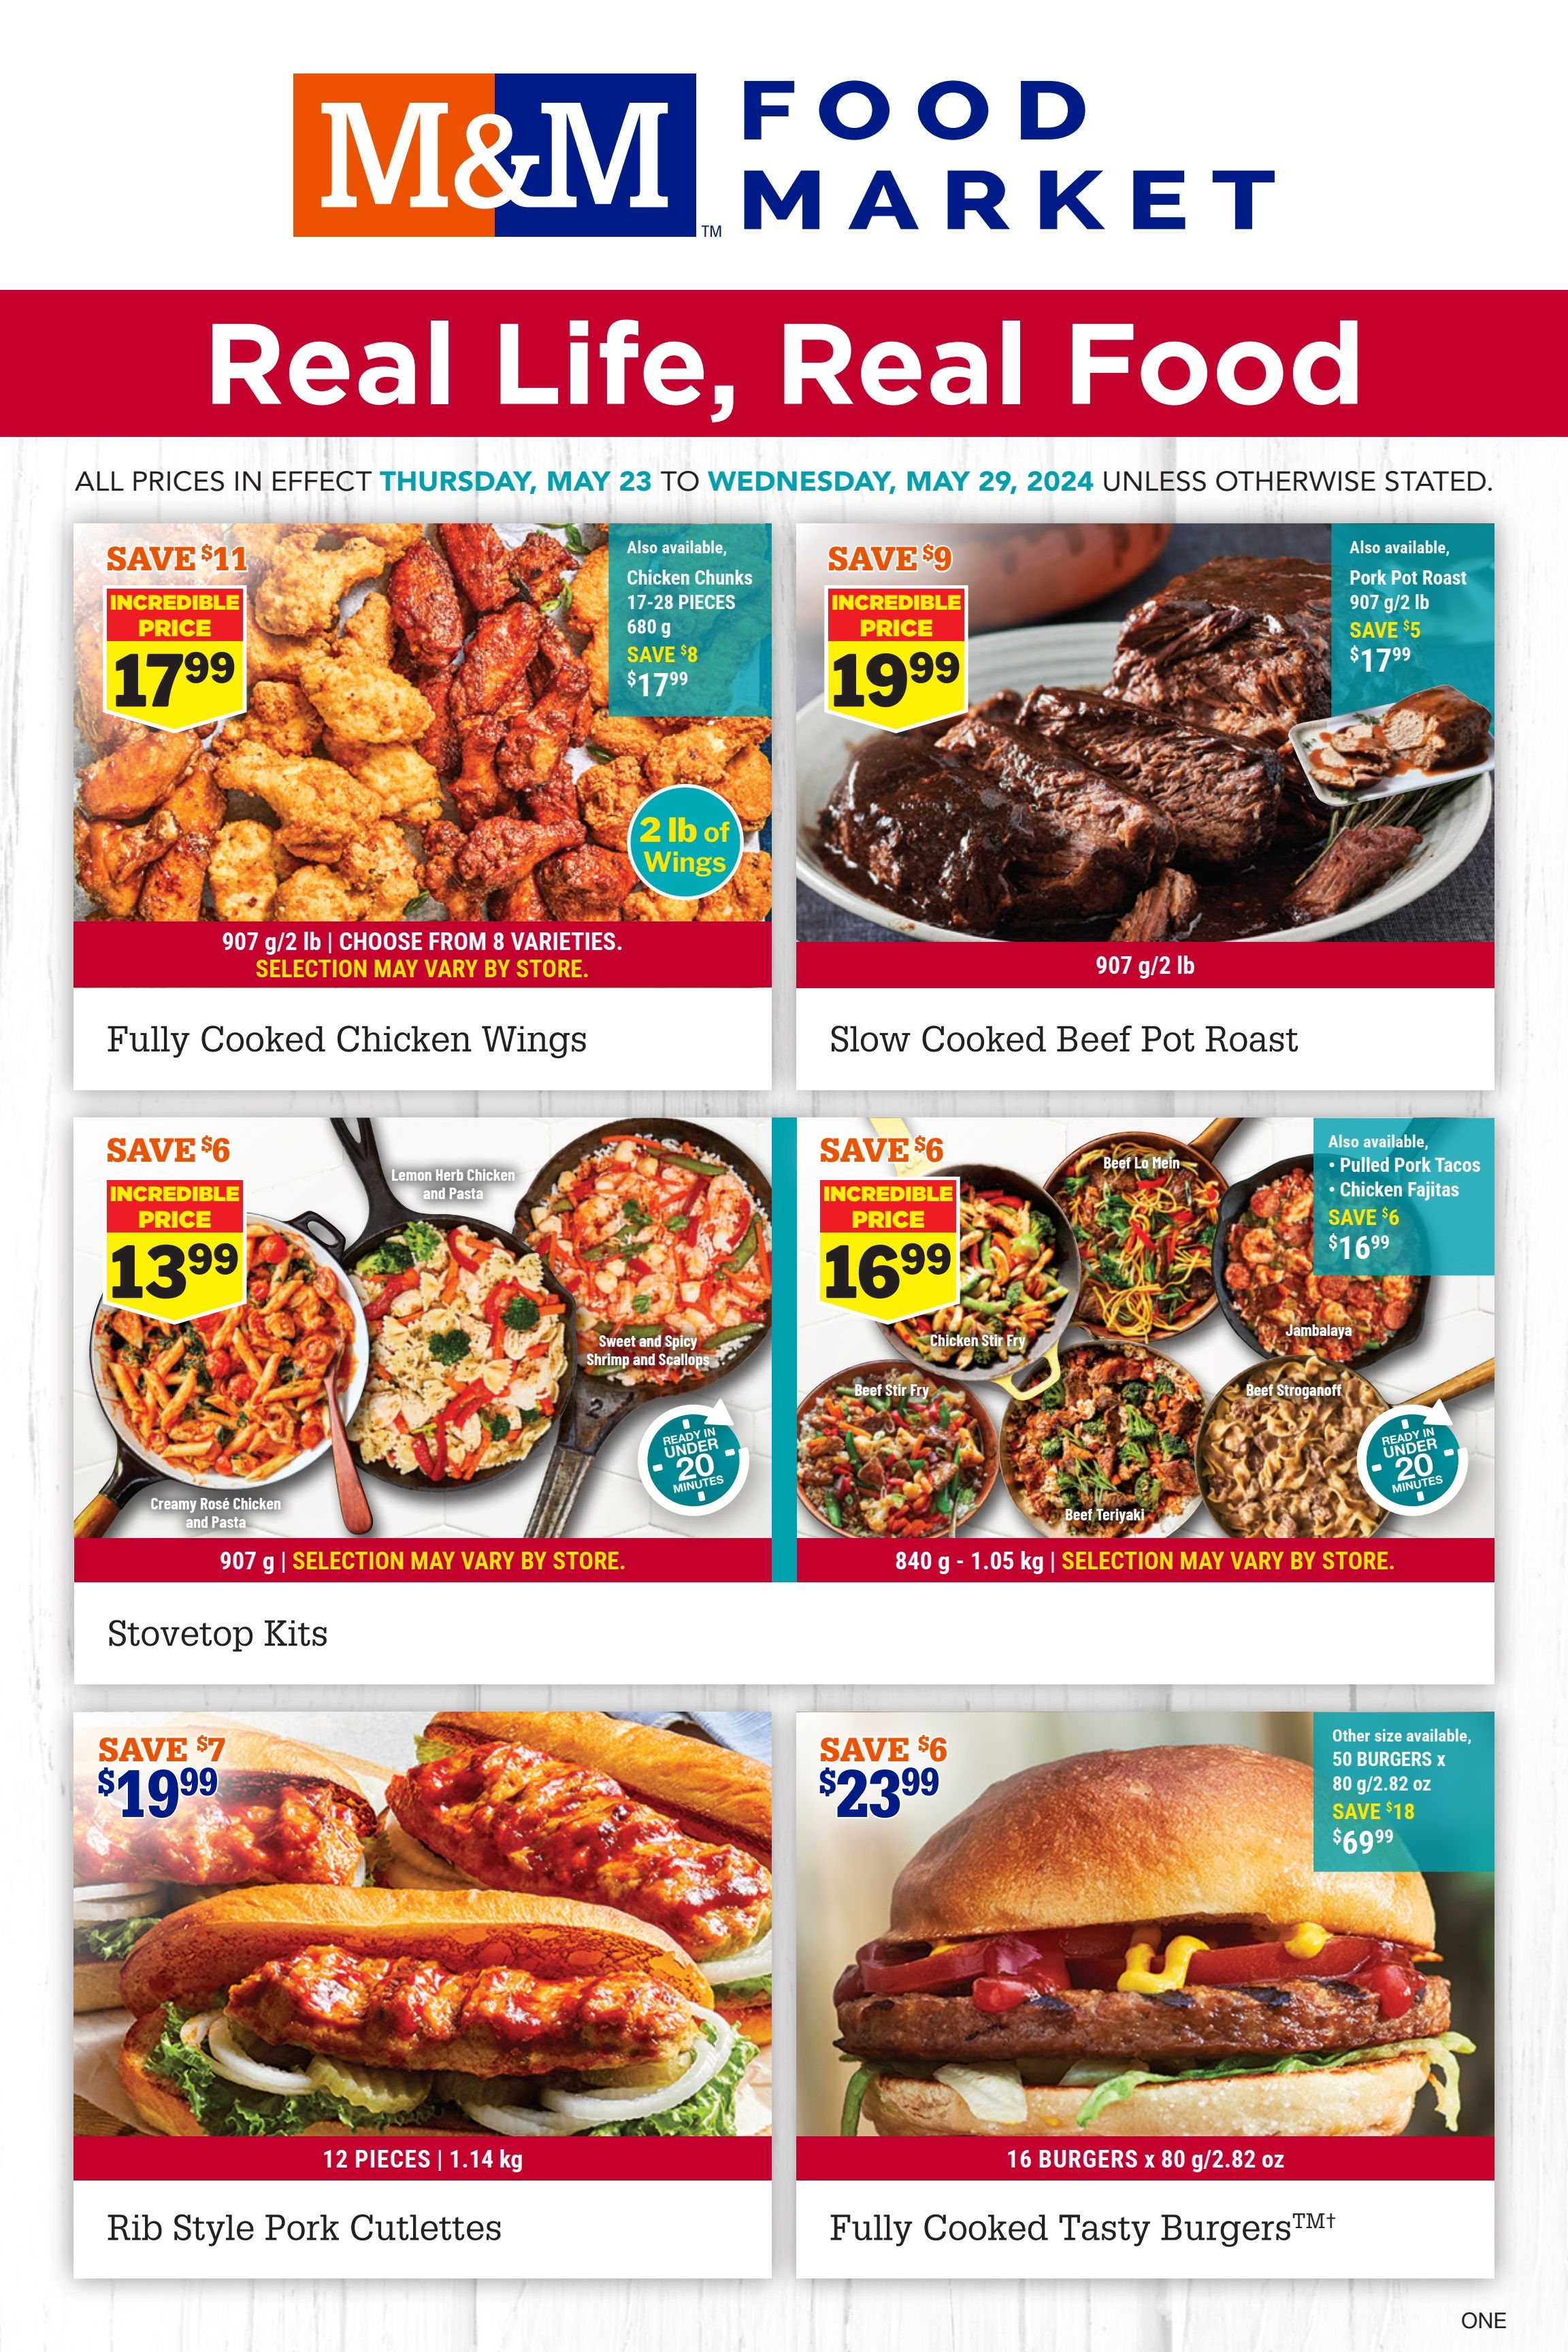 M&M Food Market - Ontario - Weekly Flyer Specials